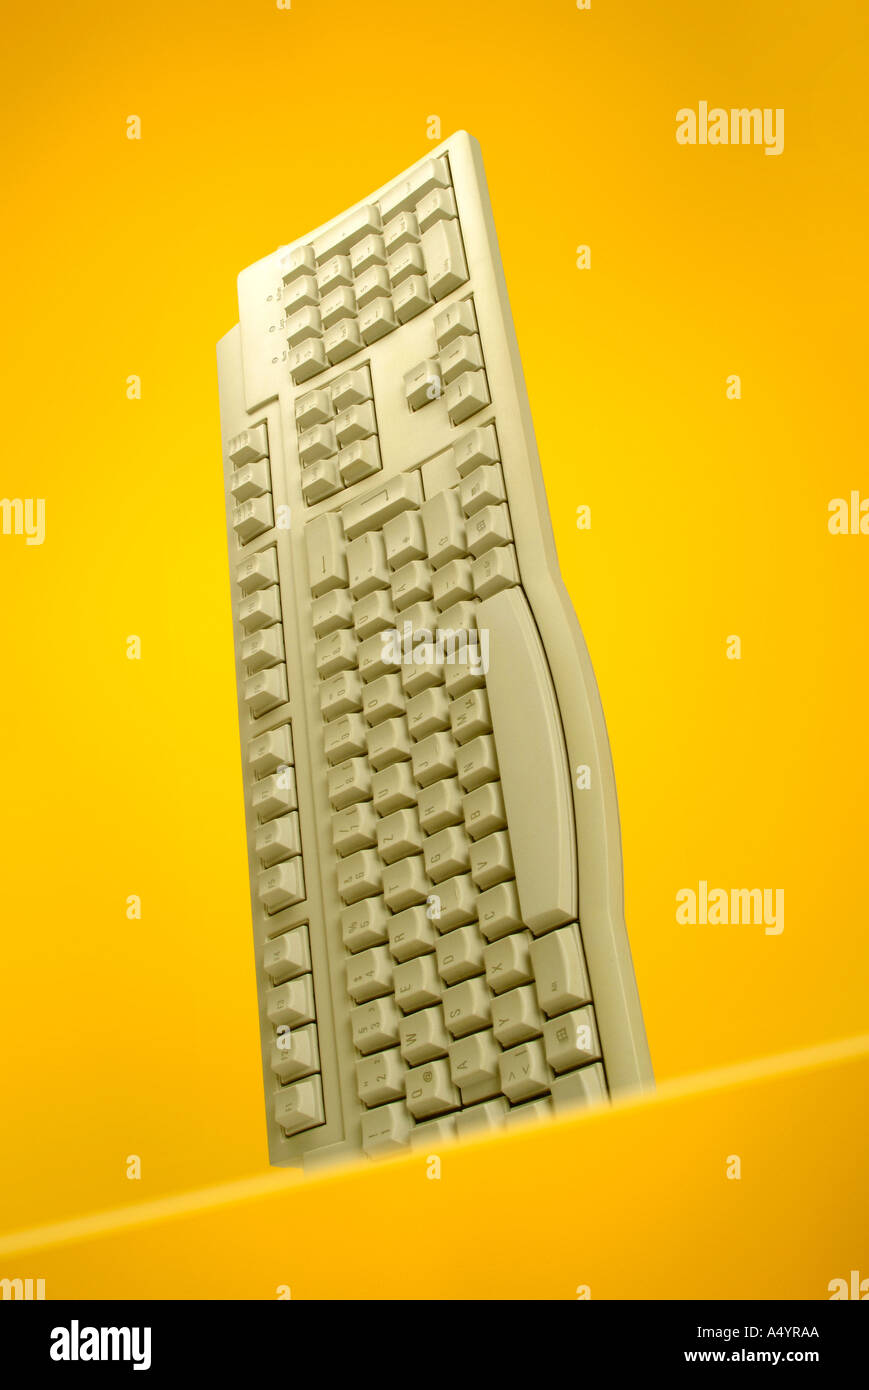 computer keyboard Tastatur Stock Photo